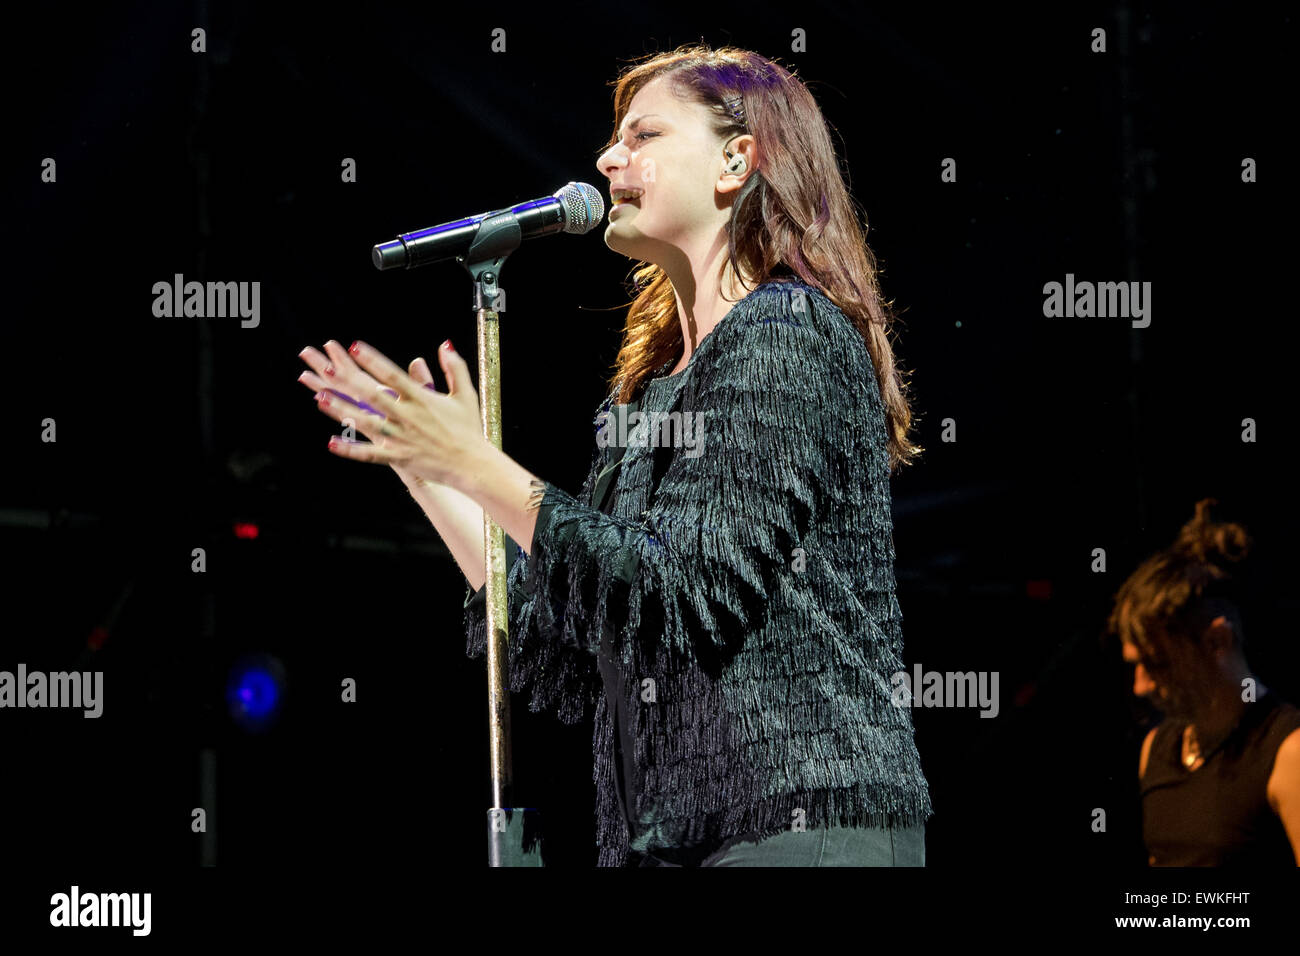 Grugliasco, Italia. El 27 de julio de 2015. El cantante italiano Annalisa, también conocido como Nali, durante el concierto de crédito: Edoardo Nicolino/Alamy Live News Foto de stock